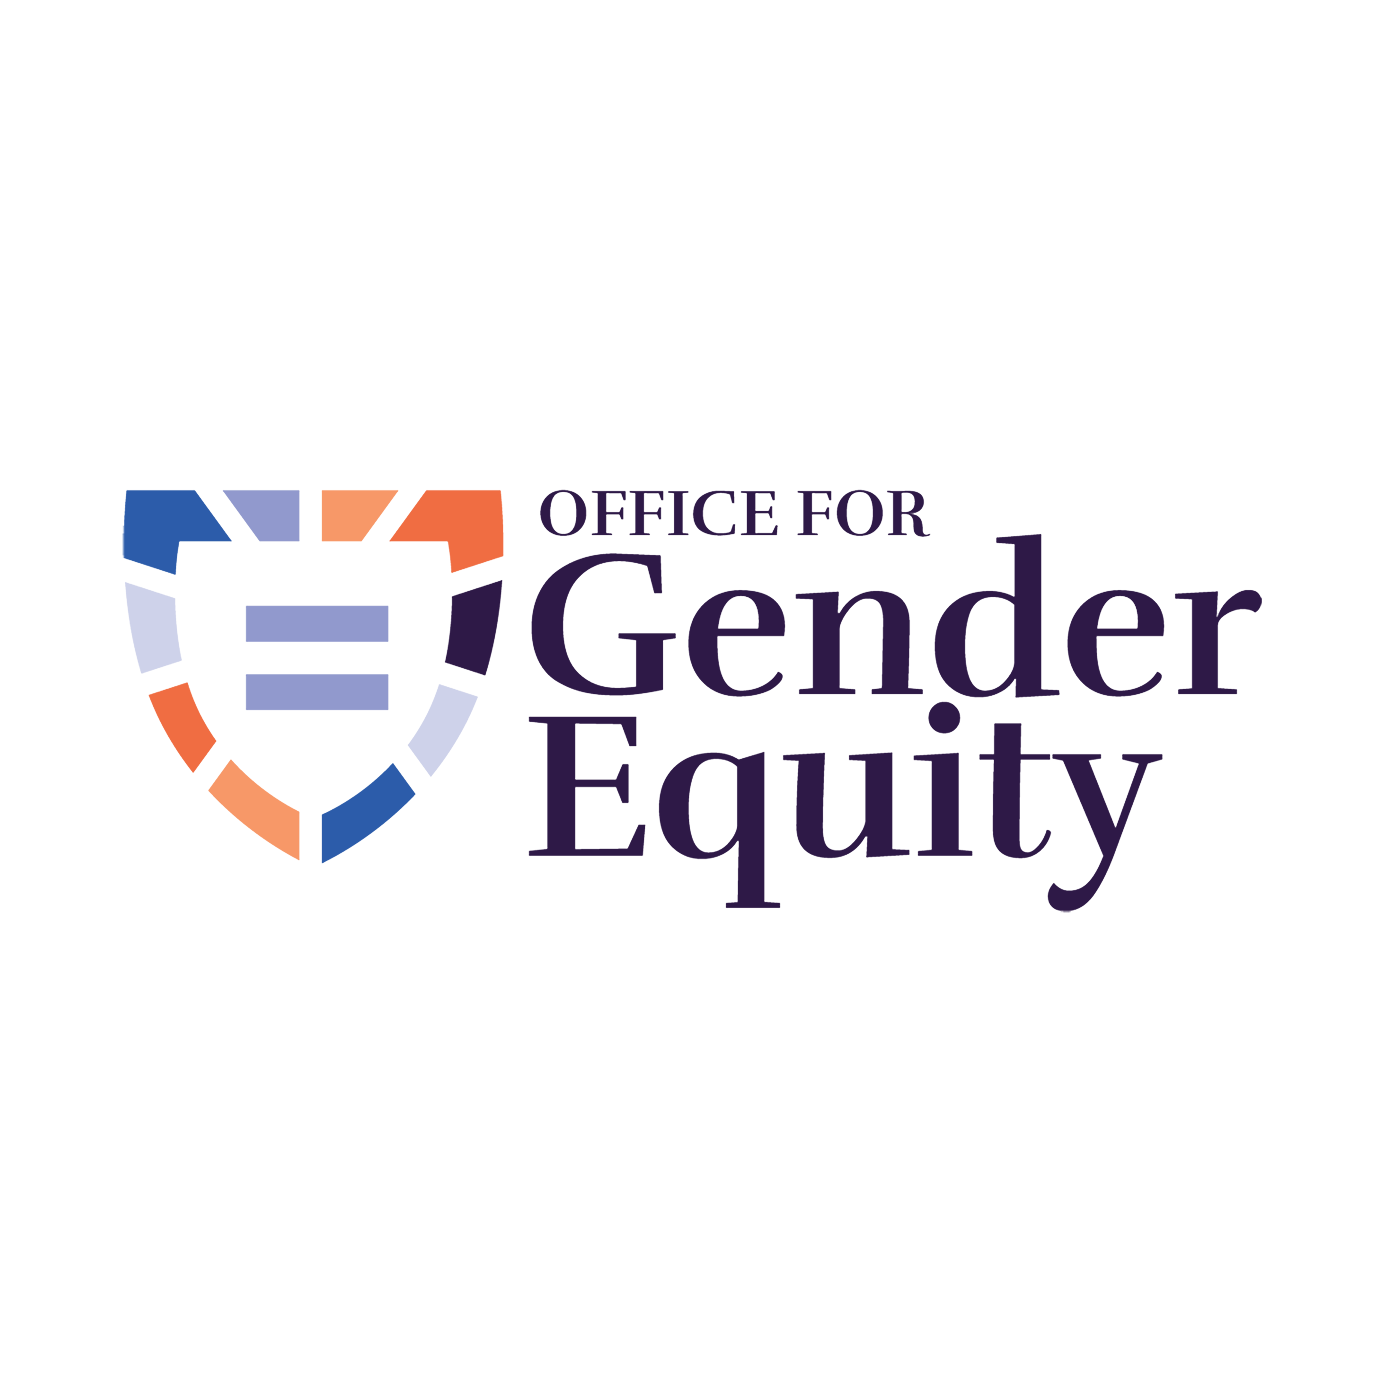 Office for Gender Equity logo